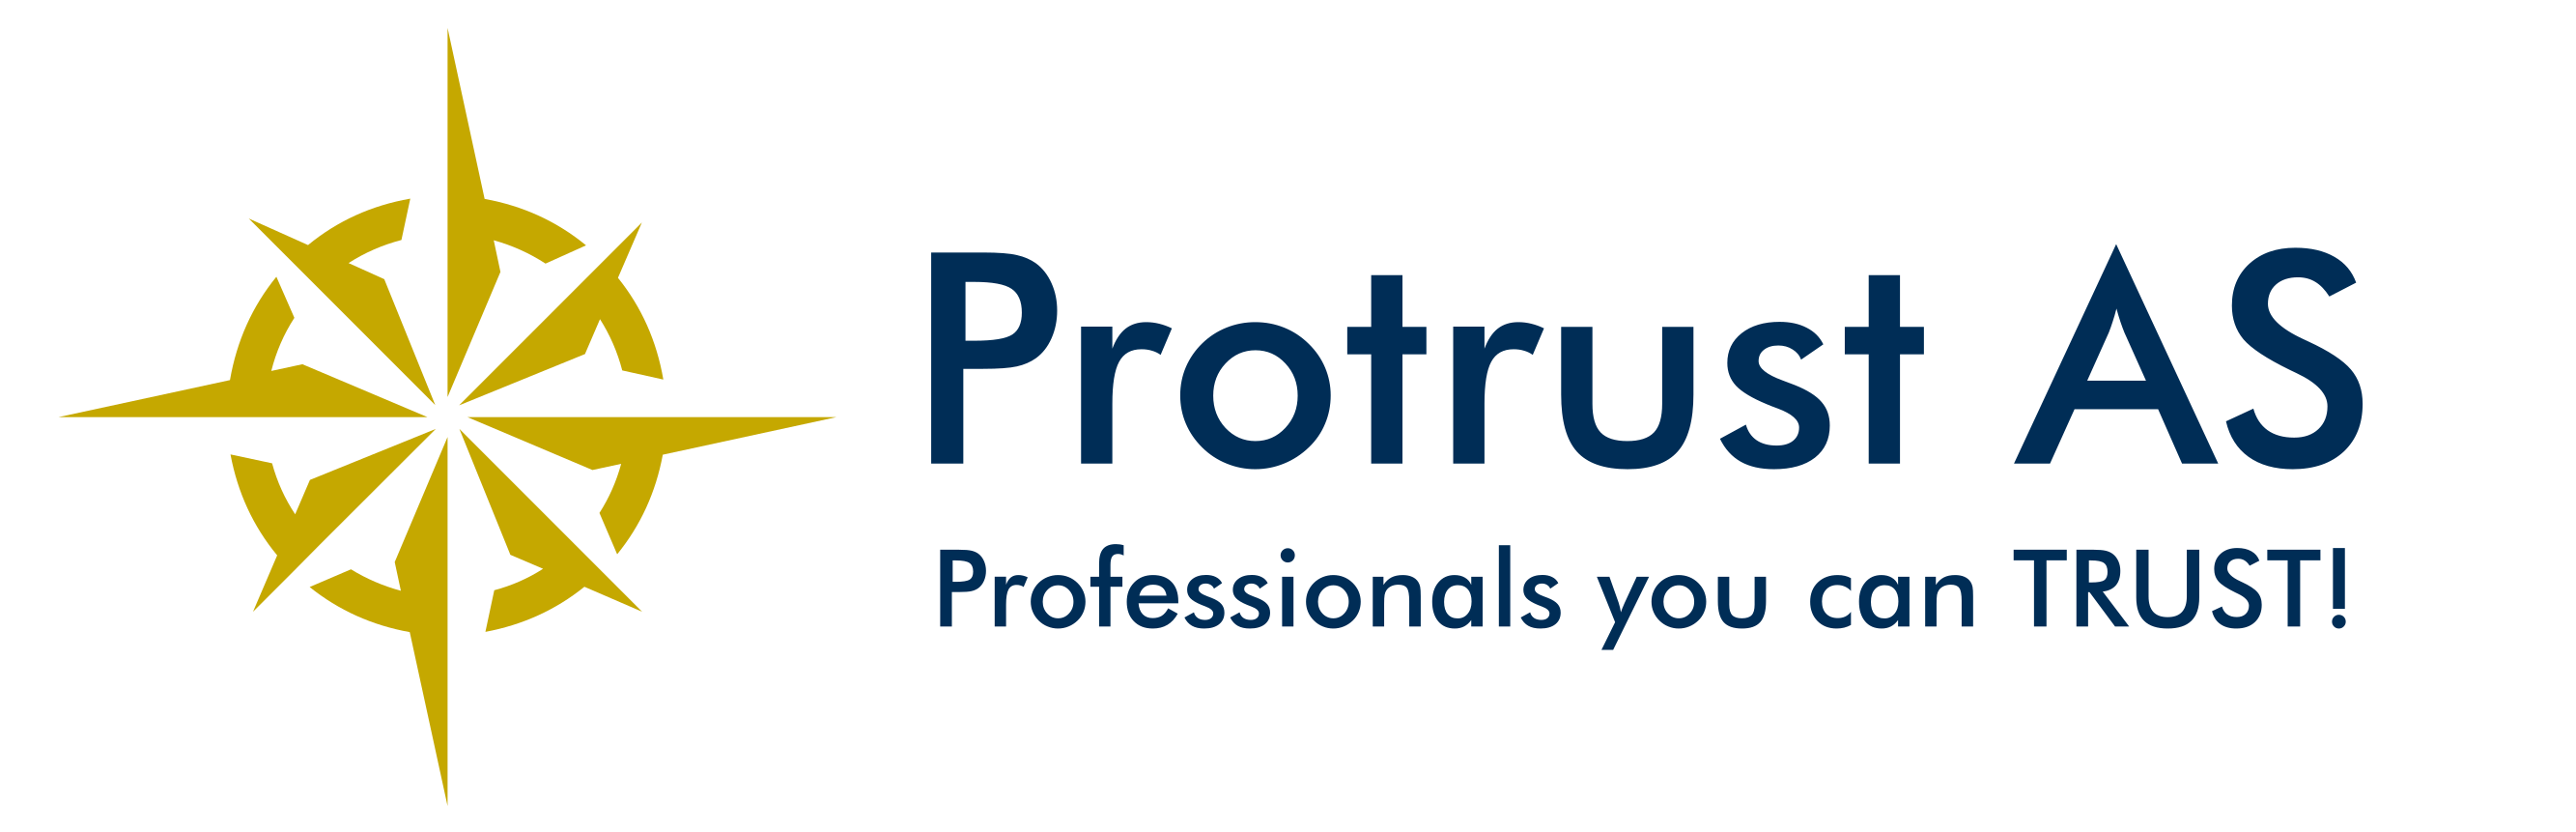 Protrust-Professionals